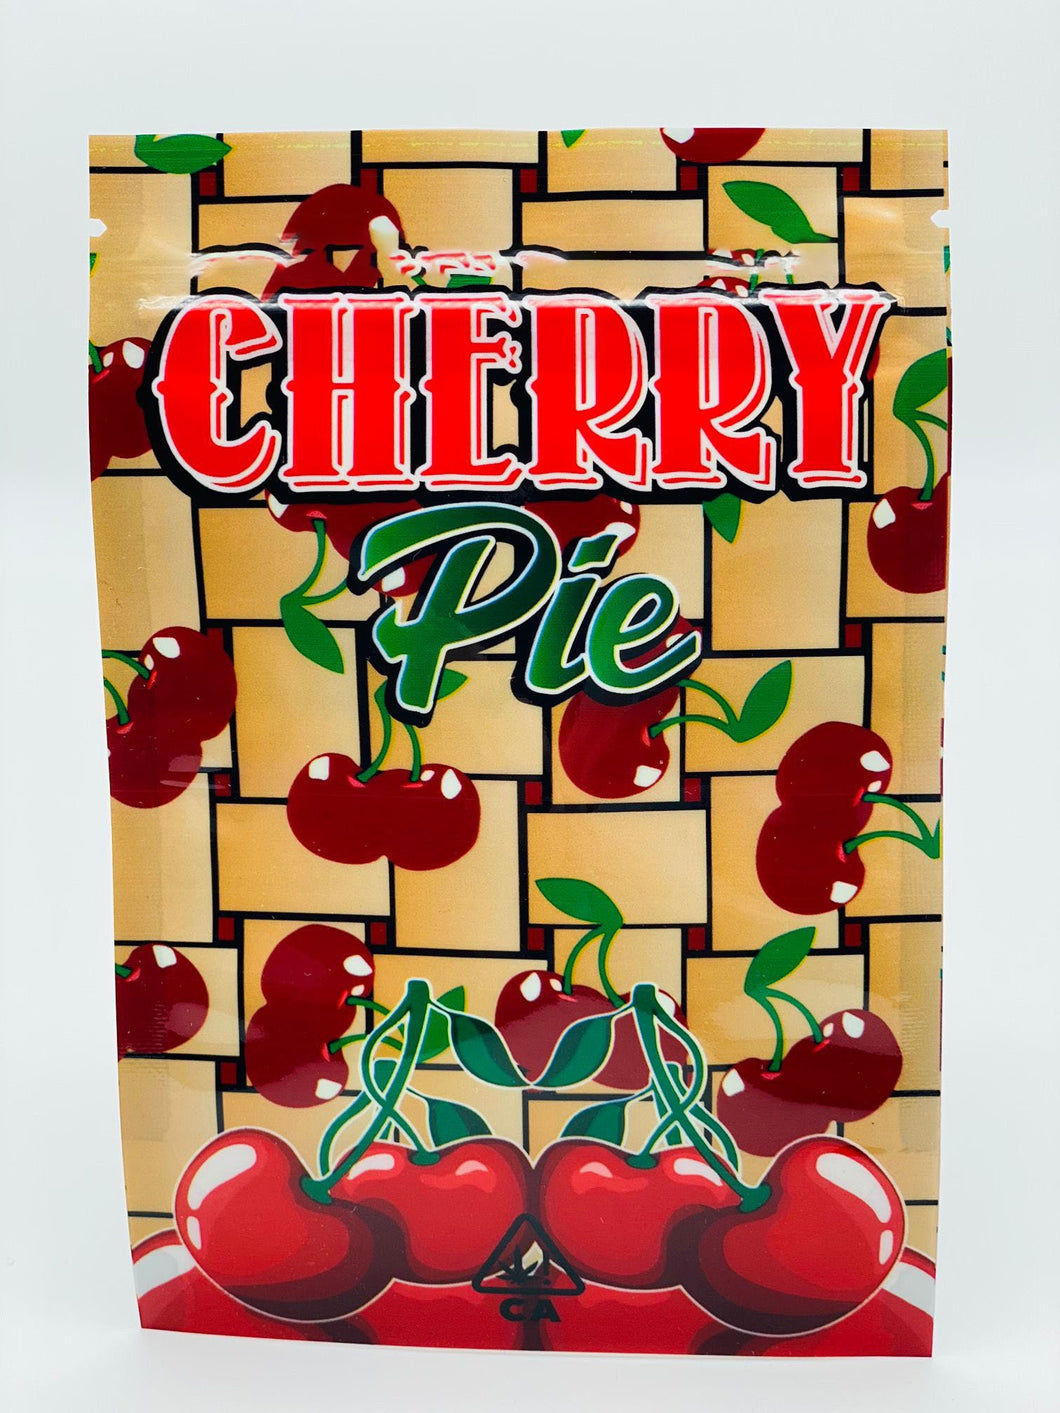 50 Cherry Pie  3.5 gram empty Mylar bags